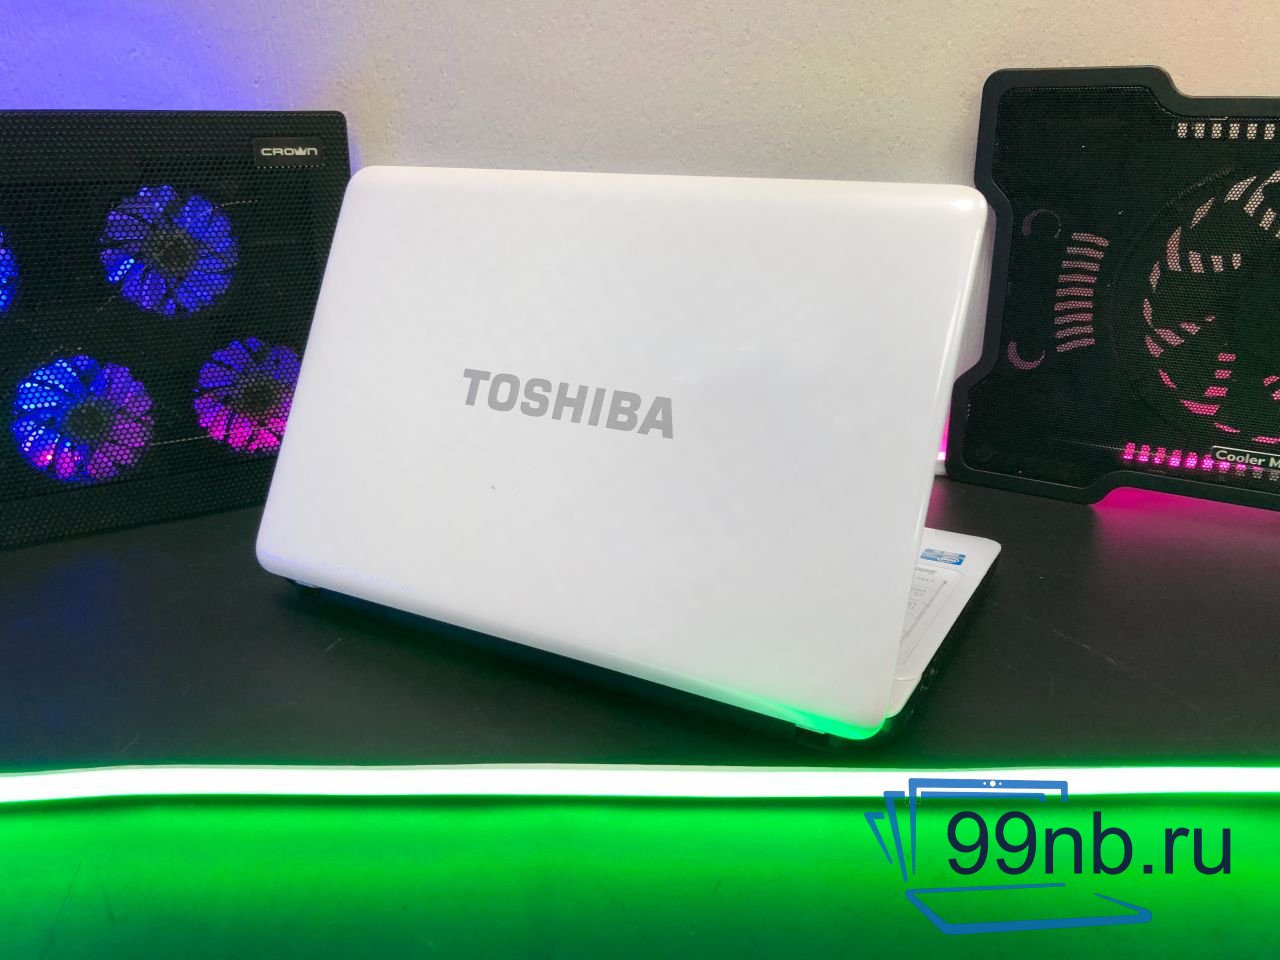  Ноутбук Toshiba для работы и учебы в наличии